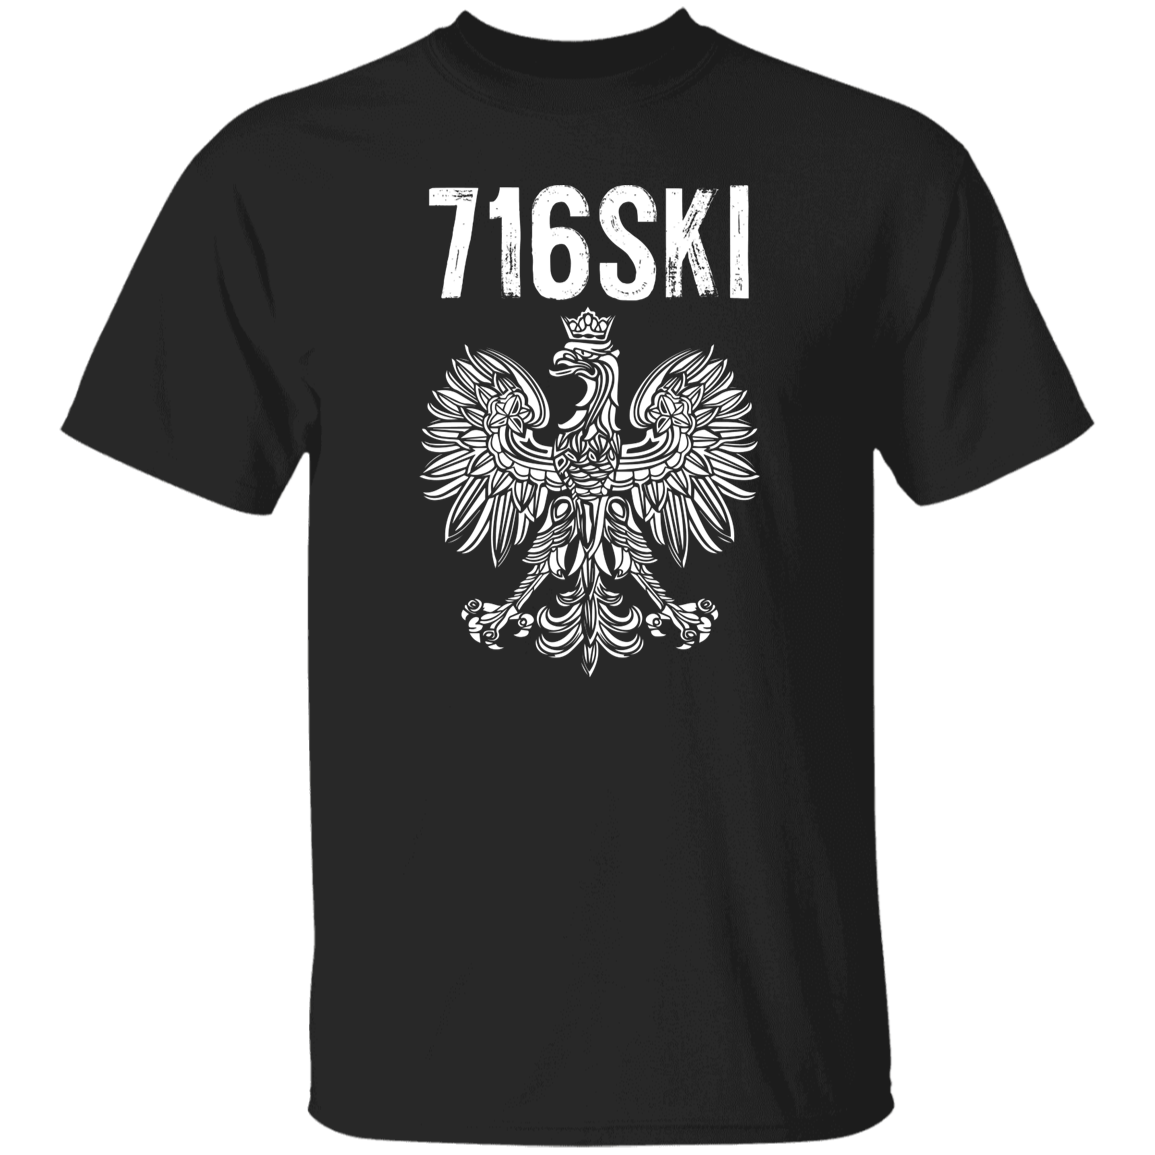 716SKI Buffalo New York Polish Pride Apparel CustomCat G500 5.3 oz. T-Shirt Black S